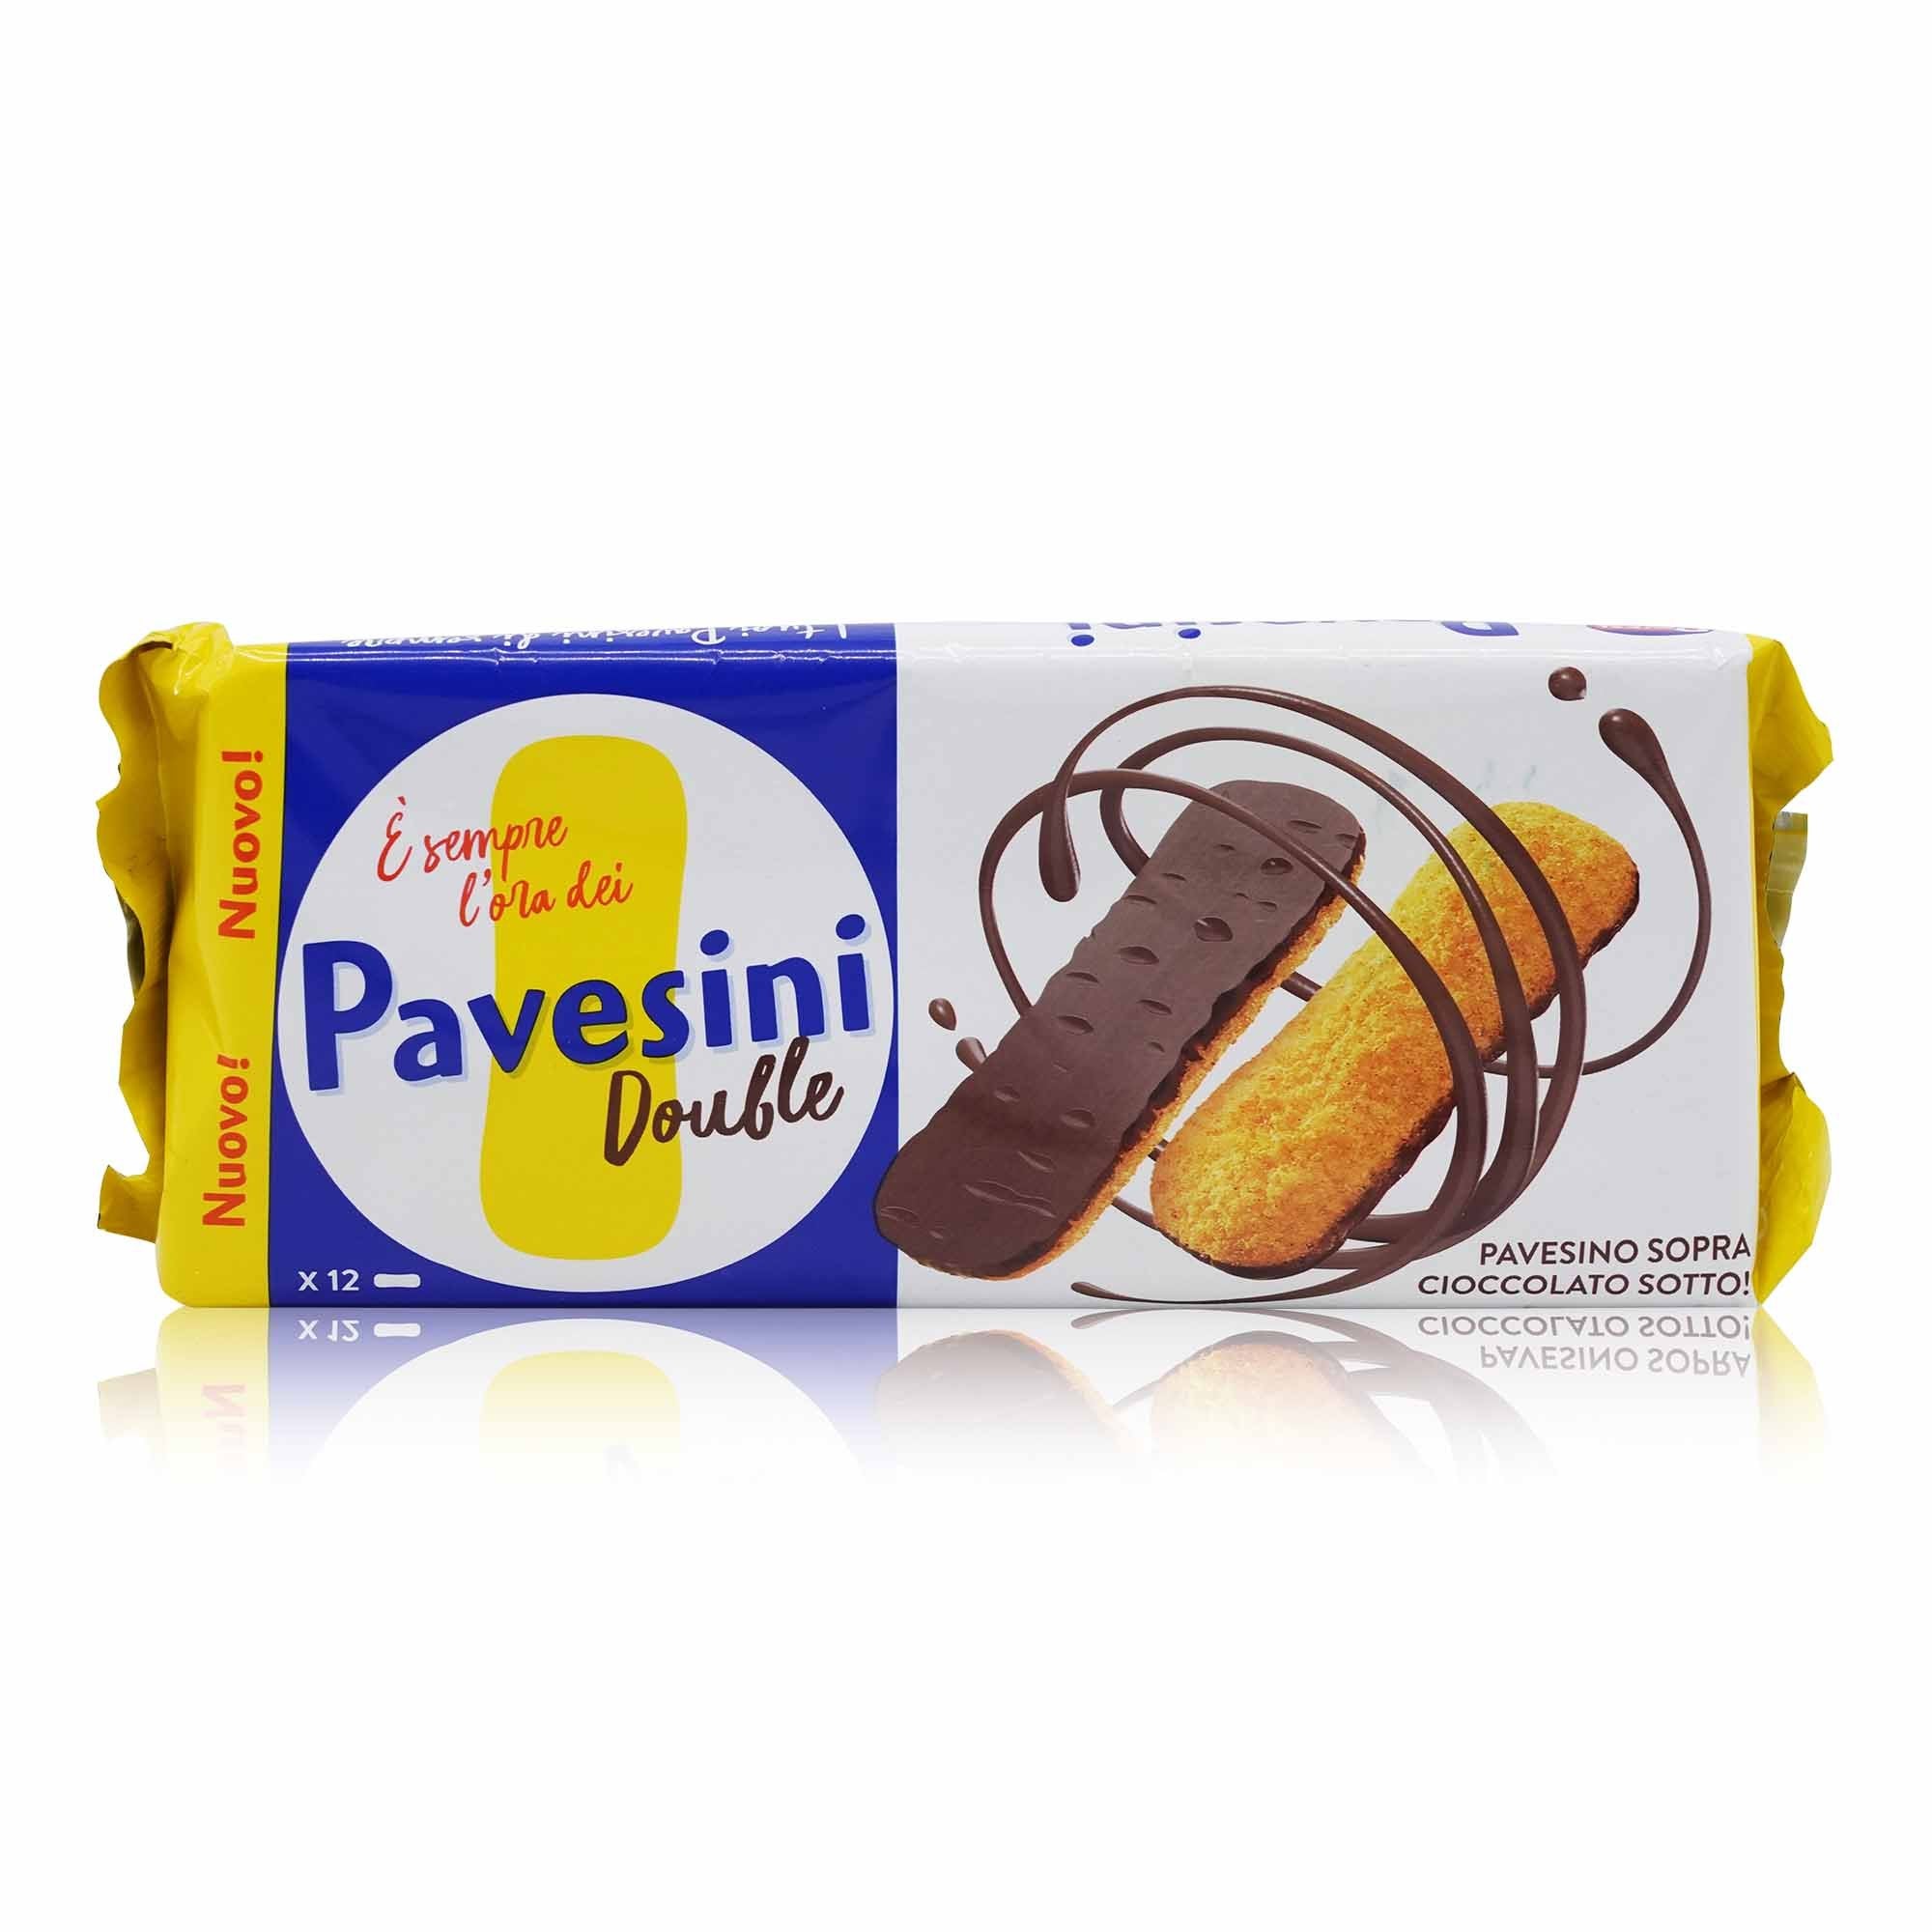 PAVESI PAVESIni Double – PAVESIni Kekse Double - 0,060kg